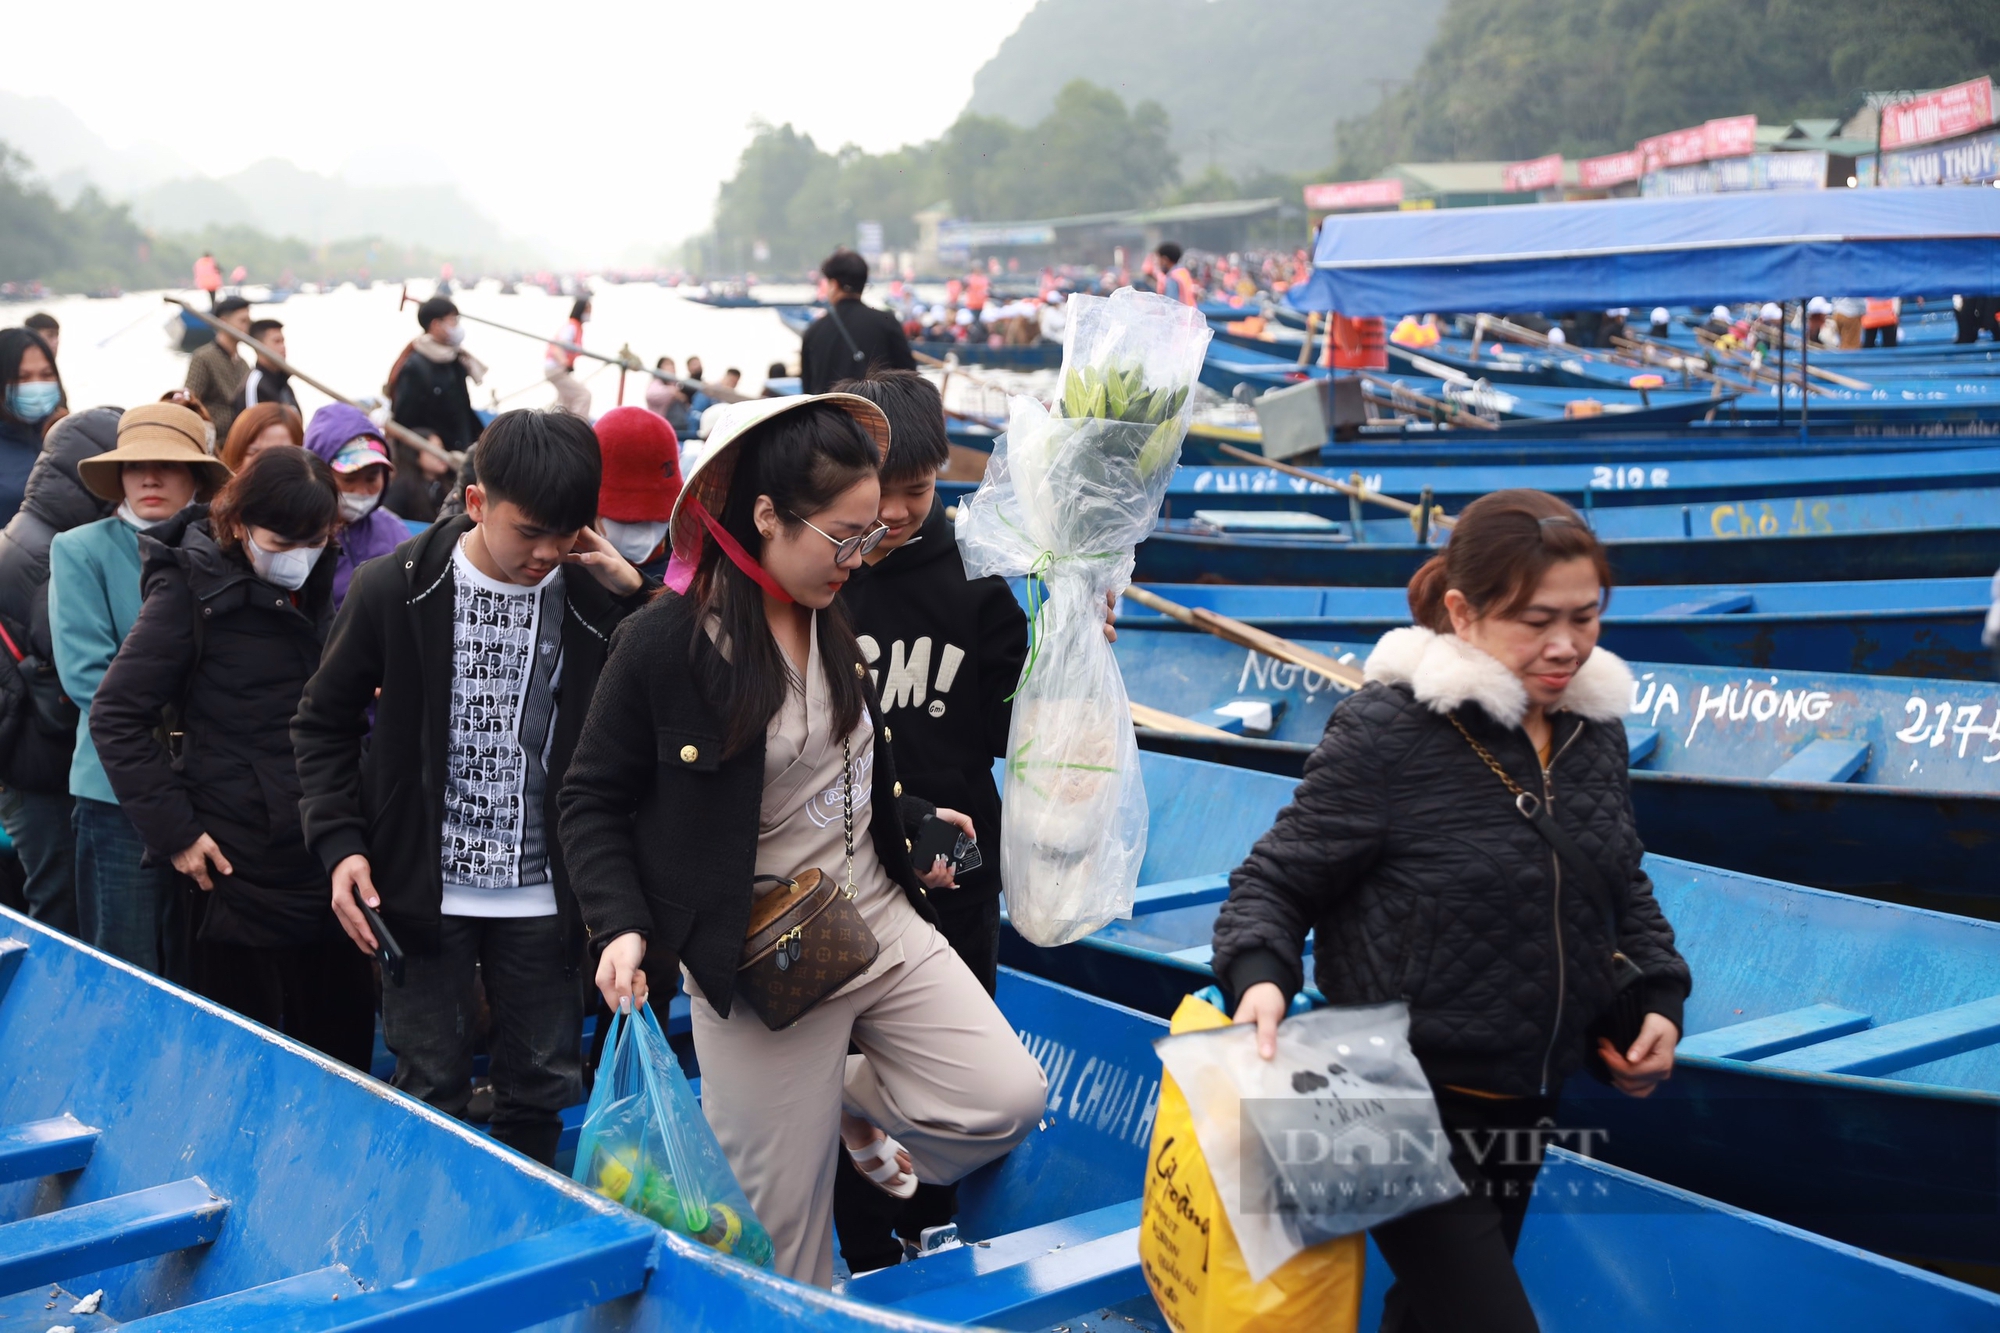 Tắc nghẹt lối lên cáp treo trước ngày khai hội chùa Hương, nhiều du khách mua vé "bỏ cuộc"- Ảnh 7.